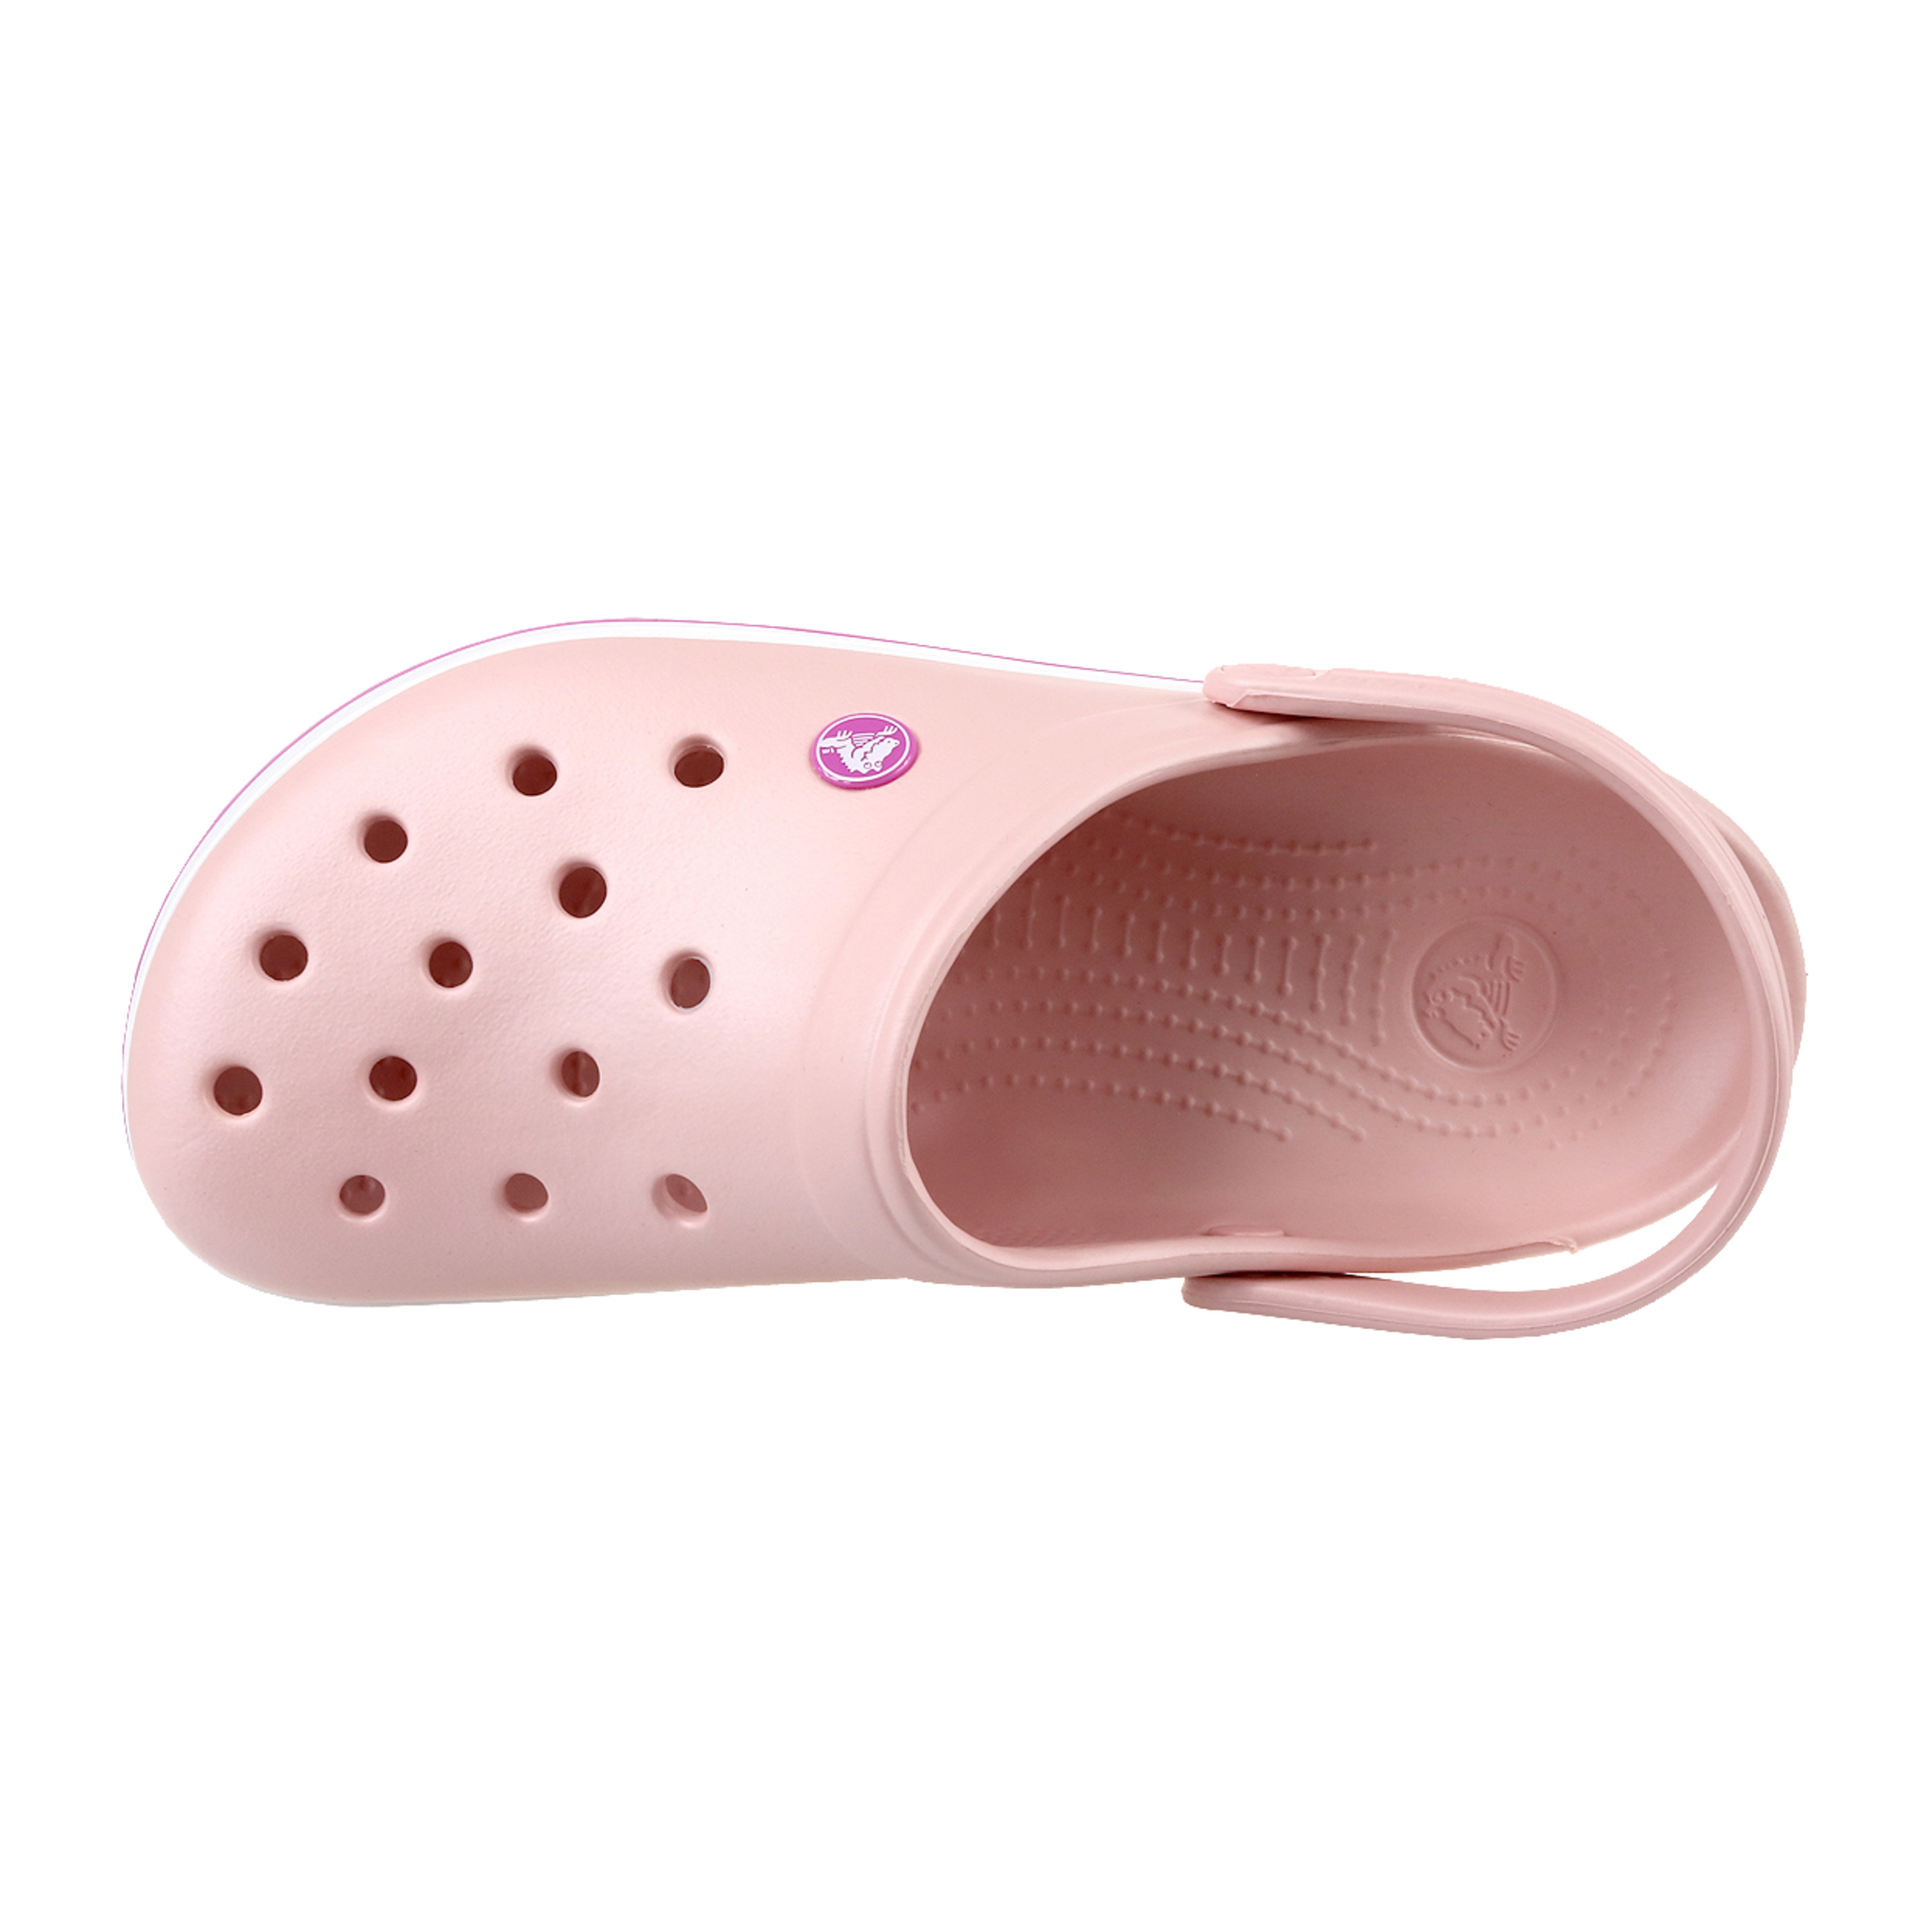 Crocs Crocband 11016-6mb - Rosa - Mujer, Rosa, Zapatillas  MKP